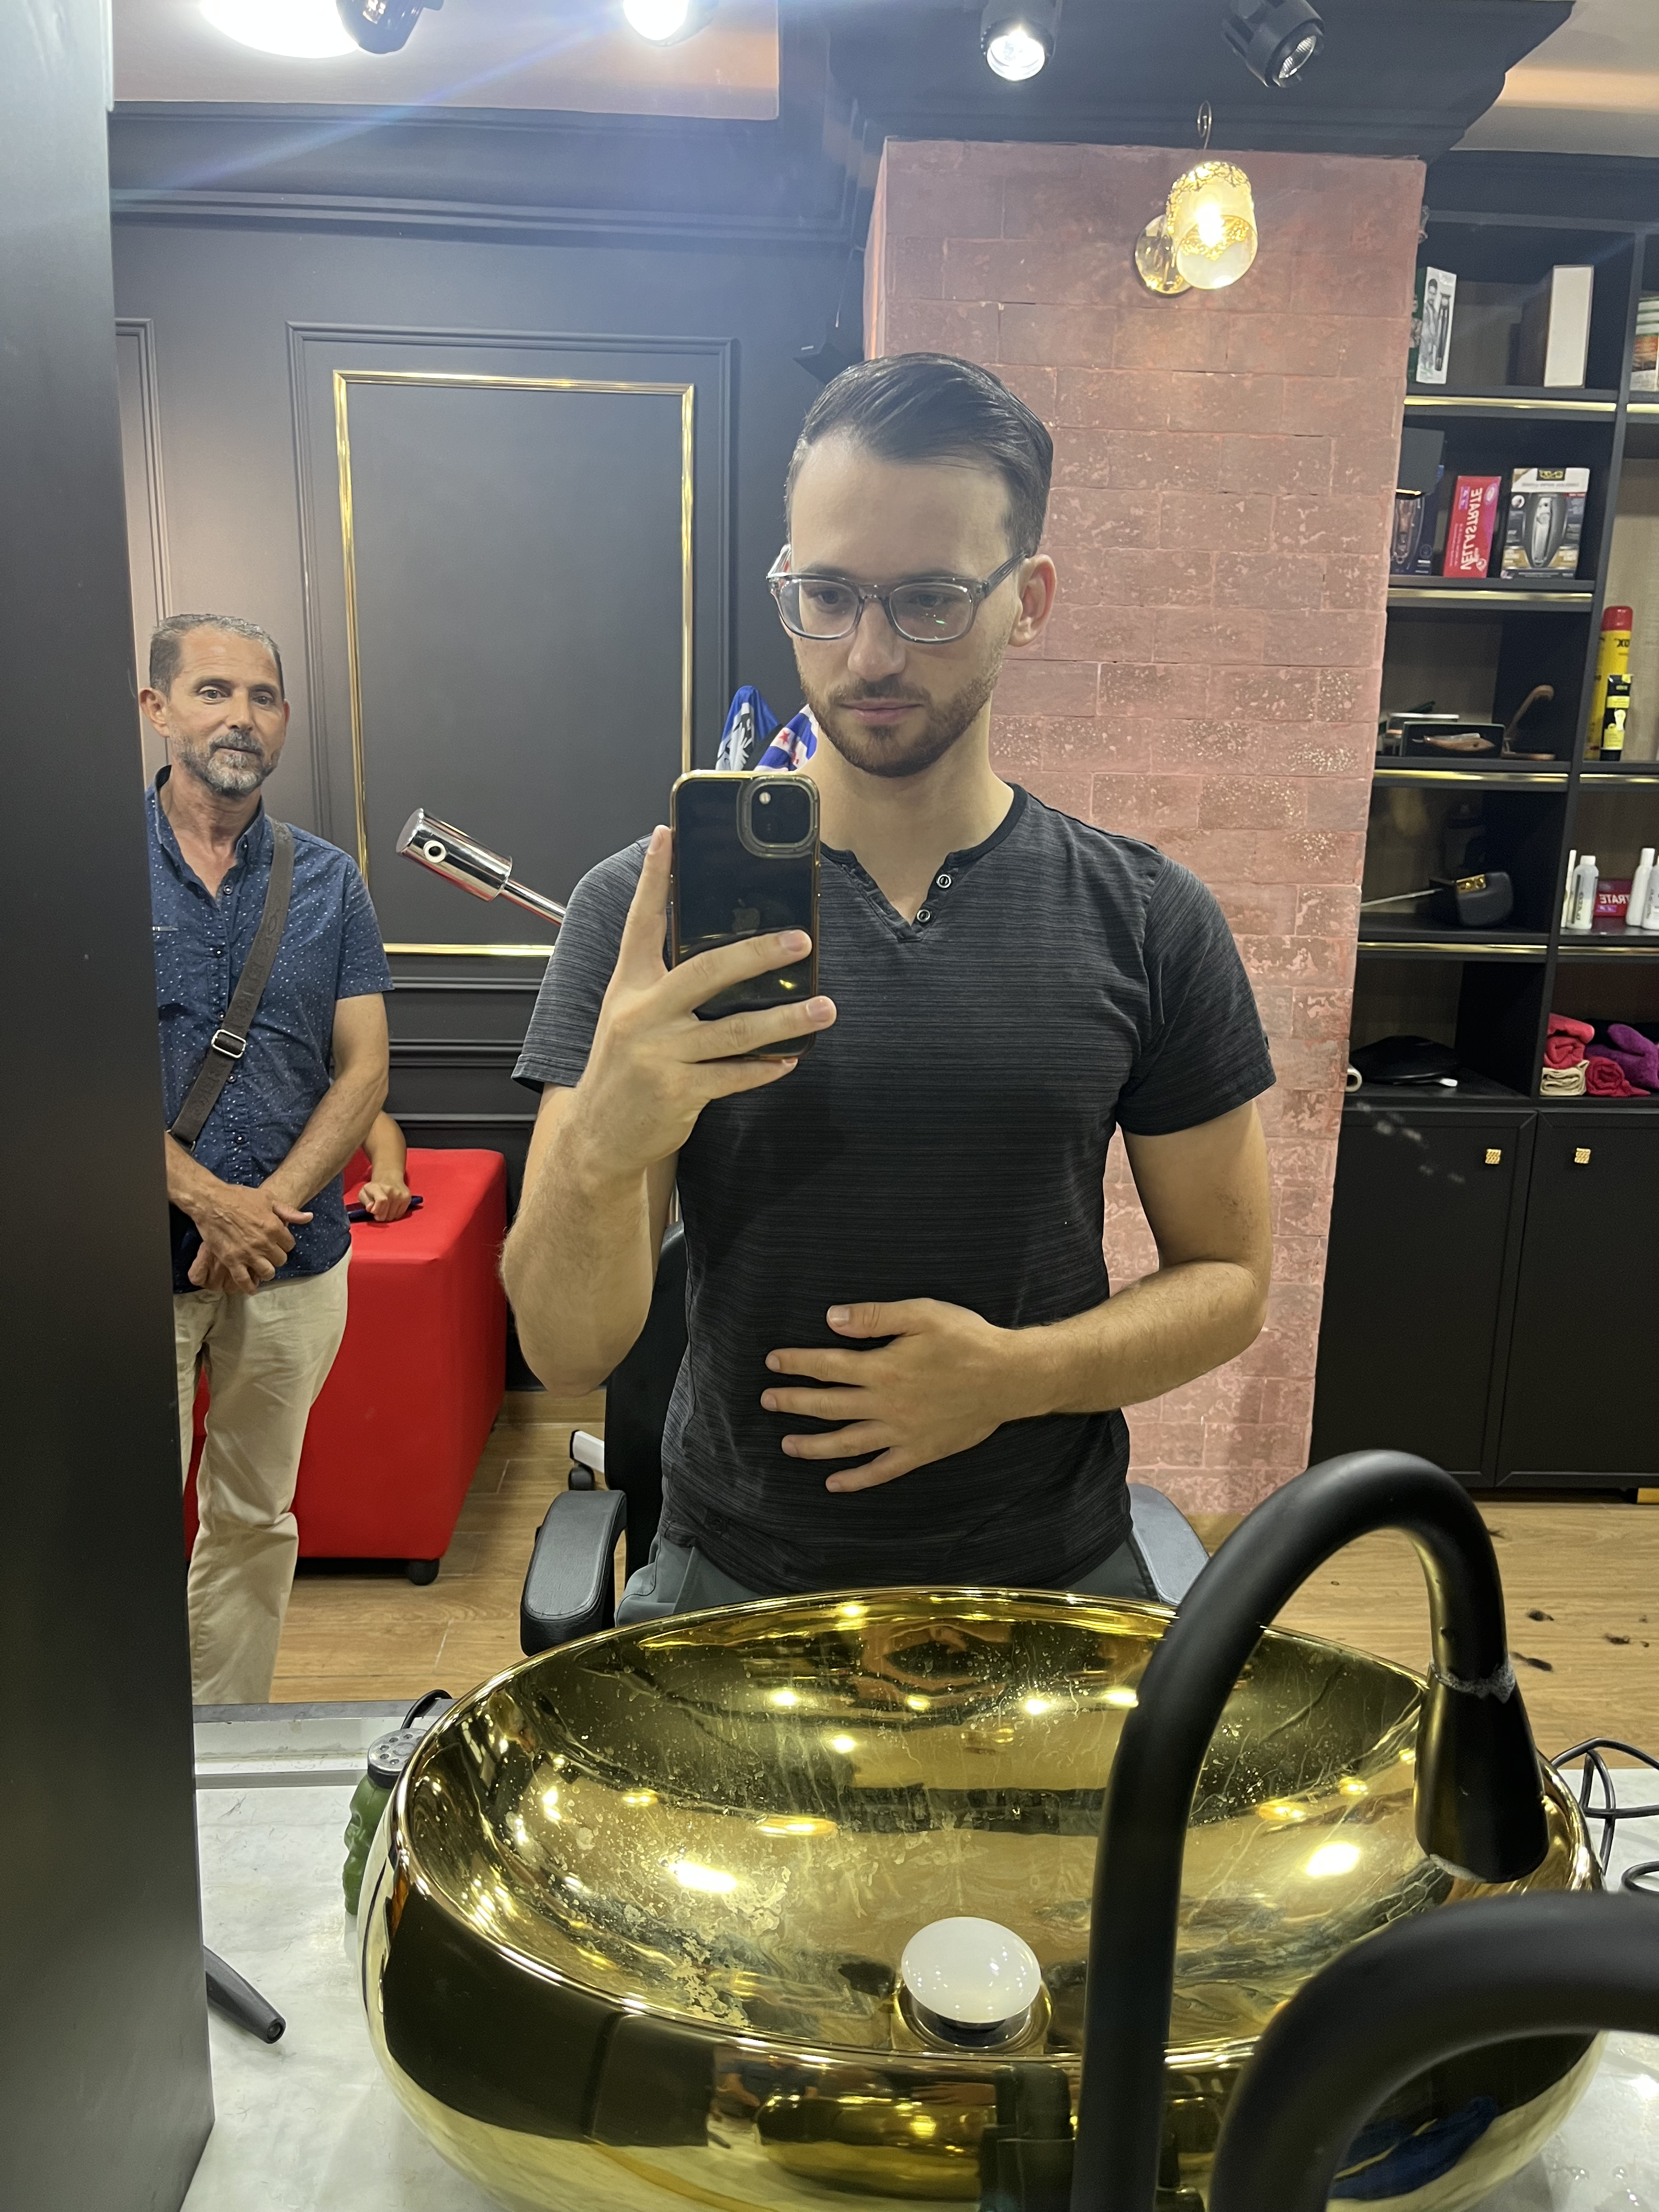 mirror selfie of my new haircut